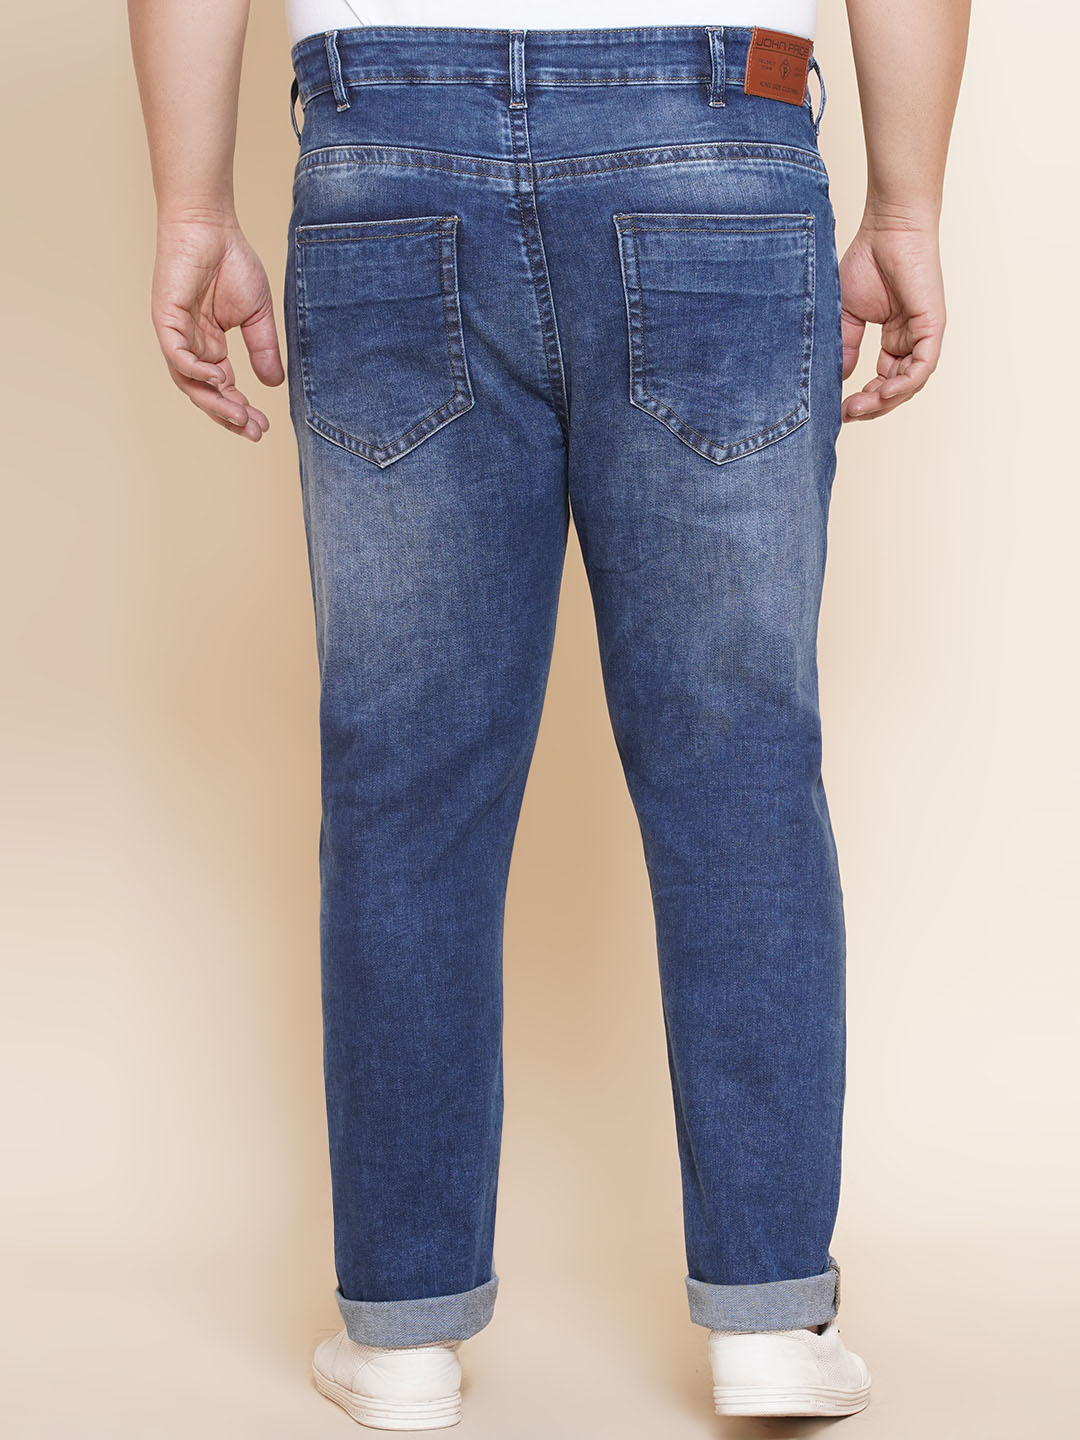 bottomwear/jeans/JPJ12298/jpj12298-5.jpg